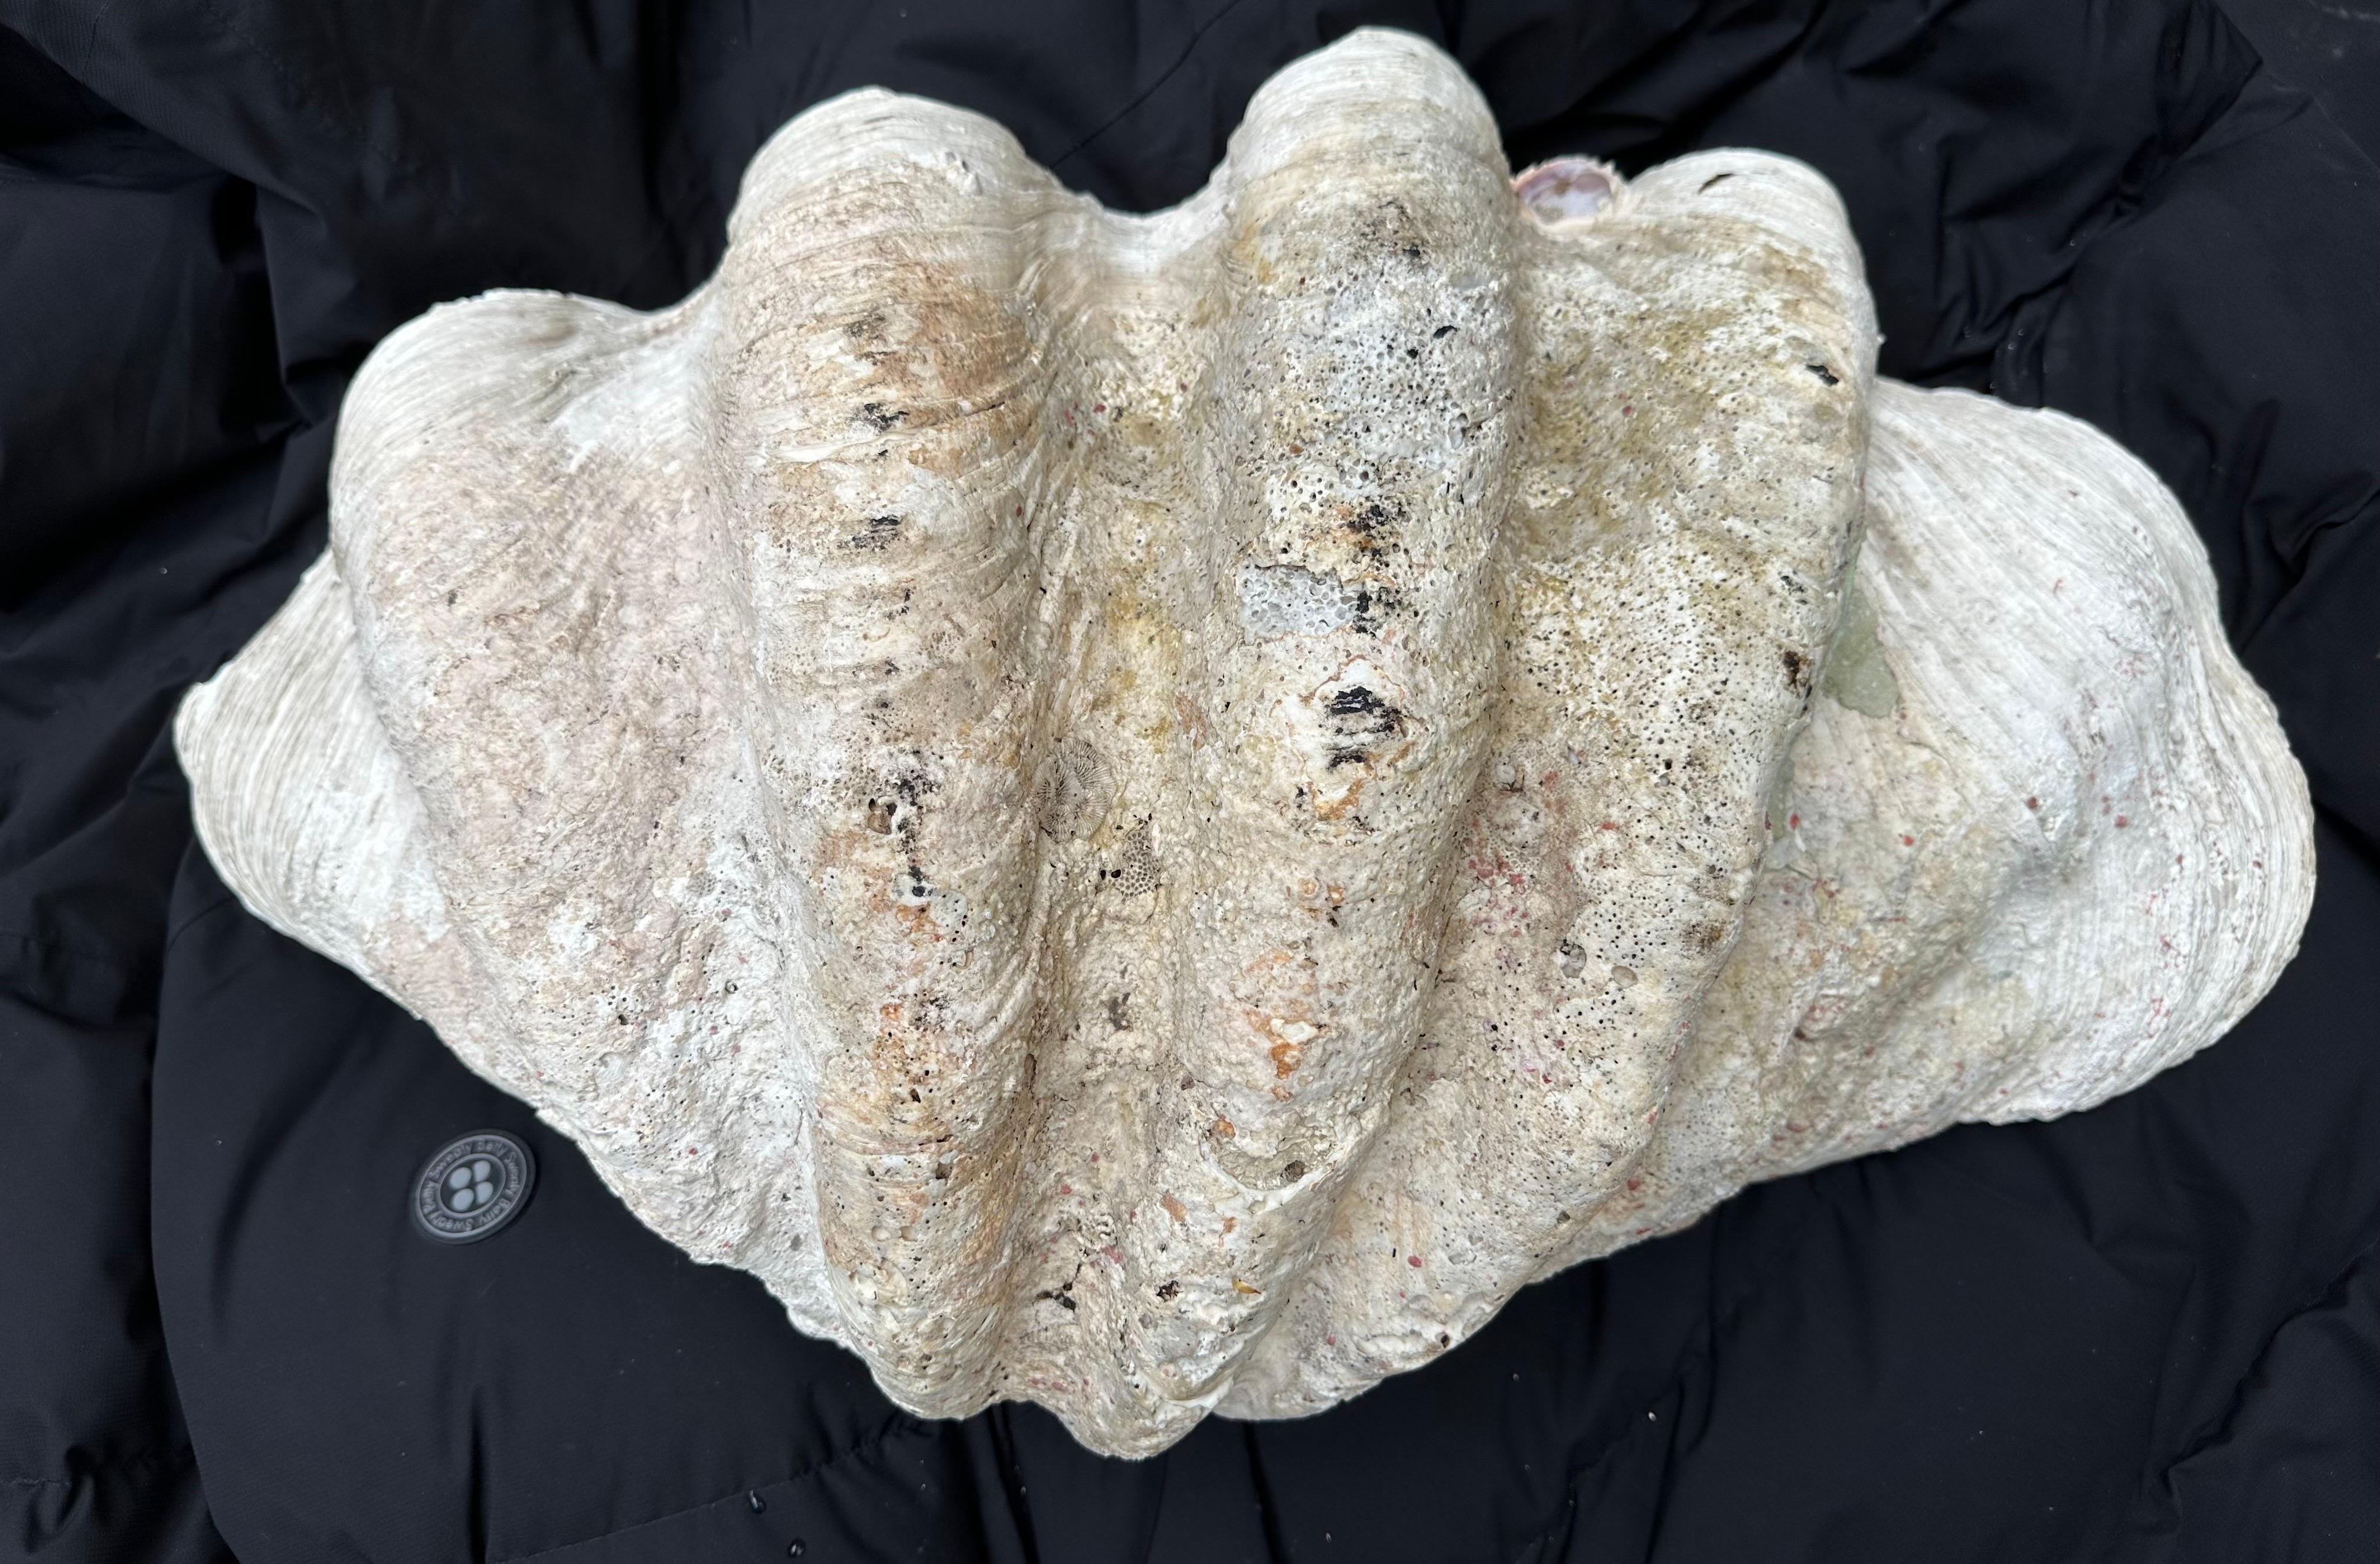 Natürliche Riesenmuschelschalen mit glänzender, milchiger Patina aus dem Südpazifik oder Indischen Ozean. Sie weisen altersgemäße Verwitterungsspuren auf. Die zweite Muschelschale ist etwas kleiner, wobei beide gut als Paar funktionieren. 
Sie